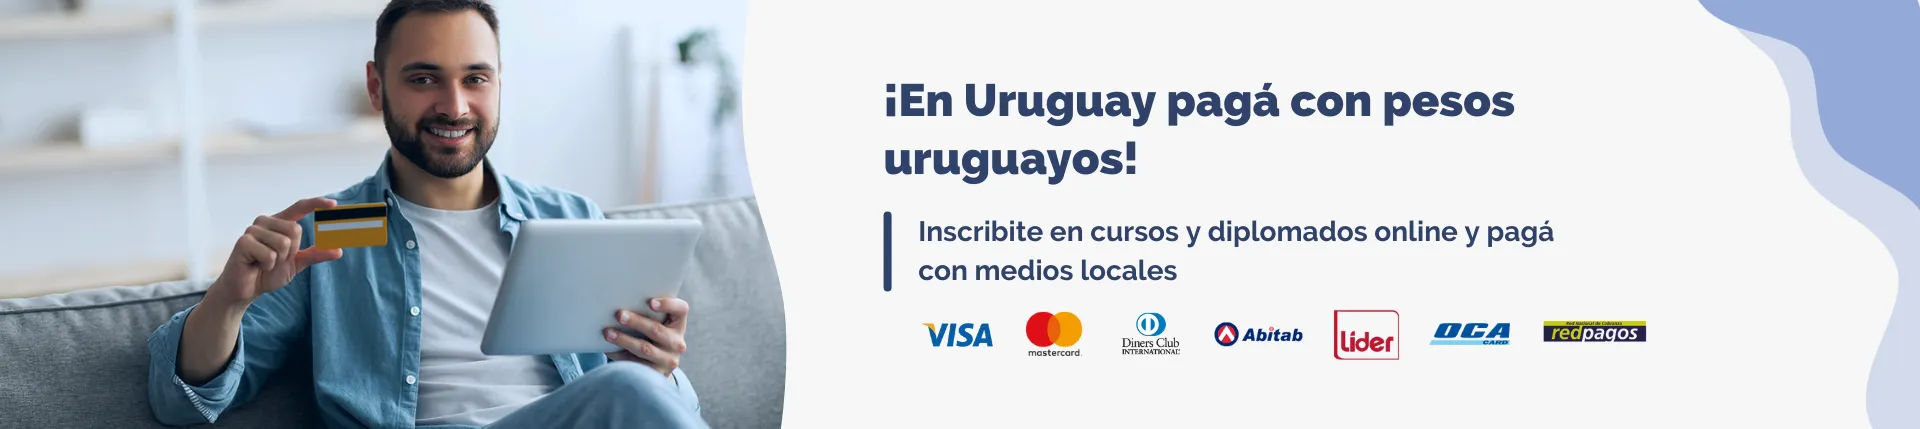 Hero image-web Uruguay-medios de pago